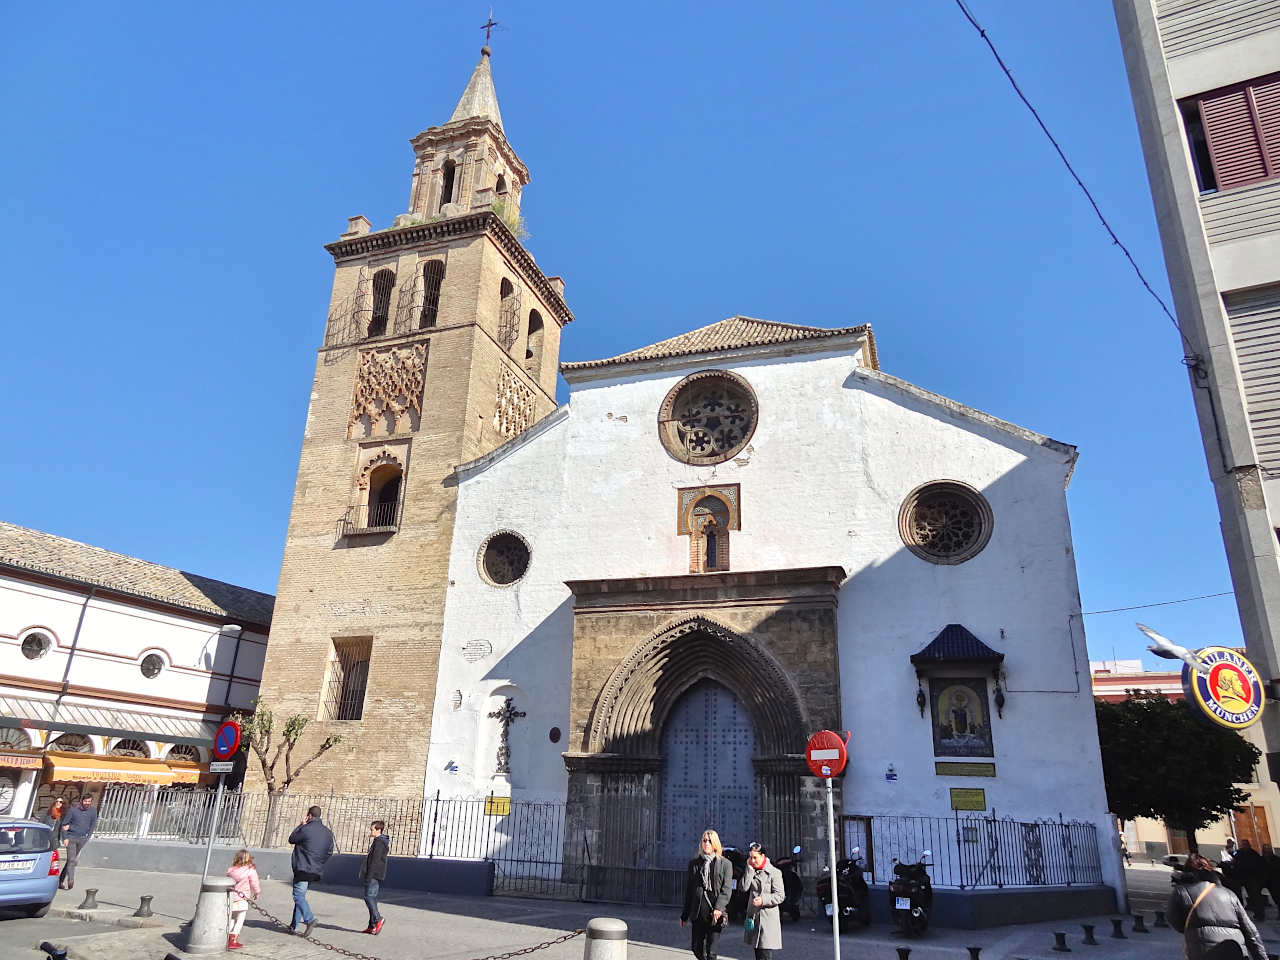 église mudéjare dans le quartier de Feria